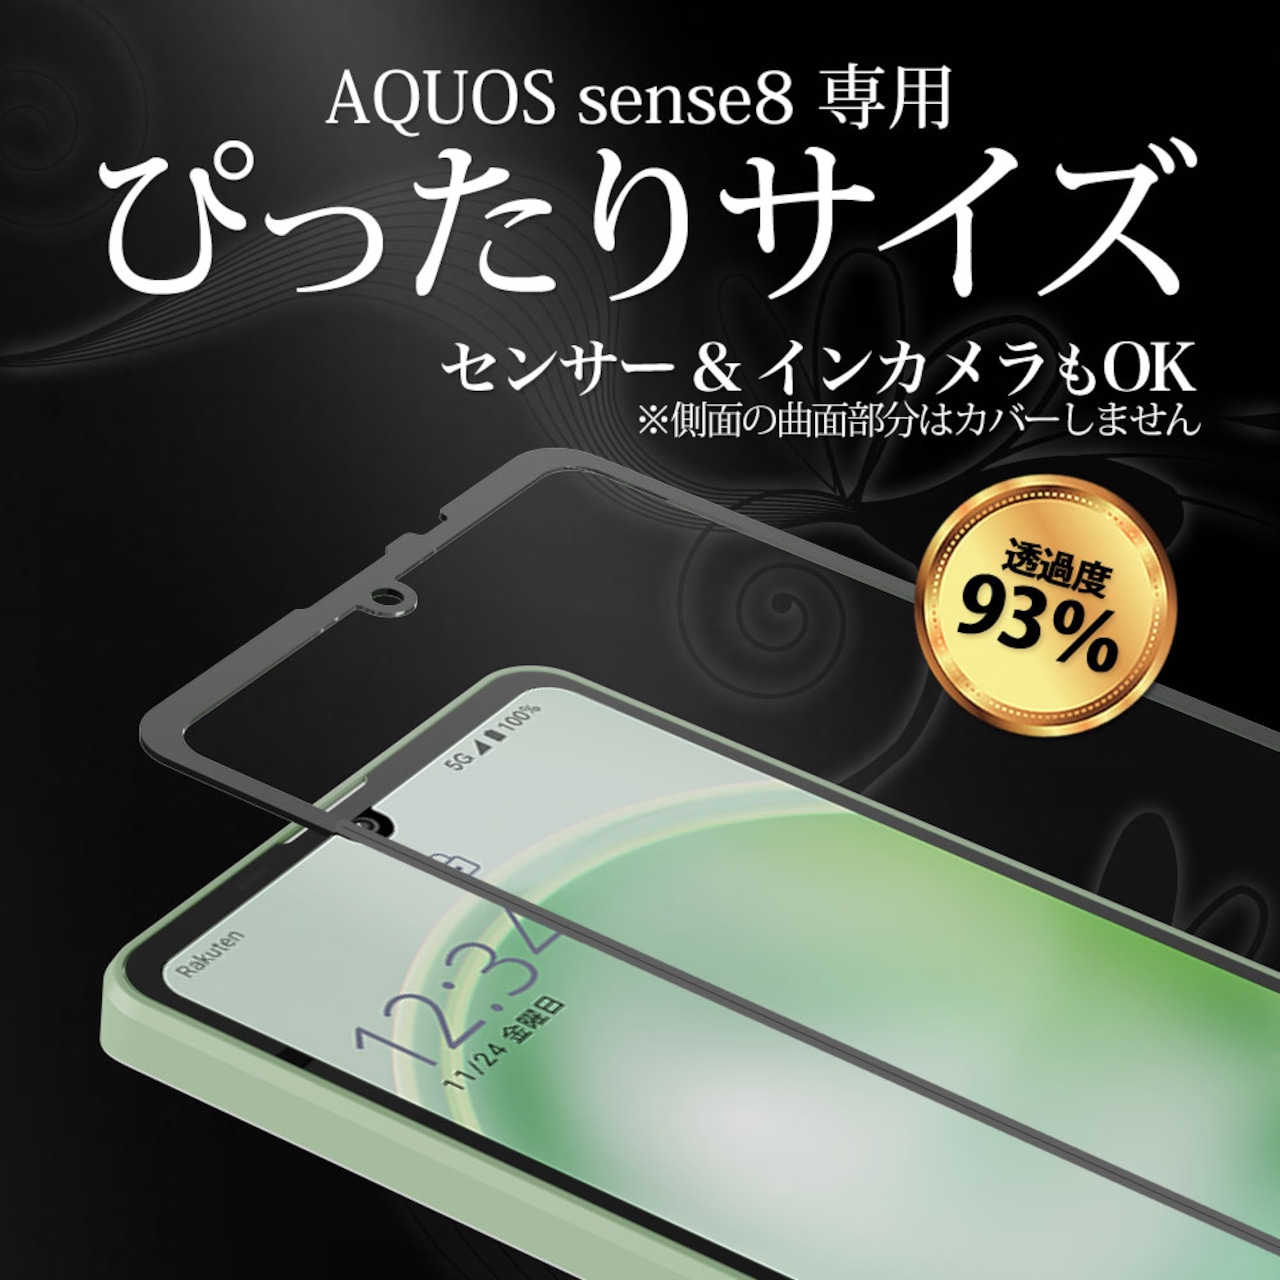 Hy+ AQUOS sense8 フィルム ガラスフィルム W硬化製法 一般ガラスの3倍強度 全面保護 全面吸着 日本産ガラス使用 厚み0.33mm ブラック